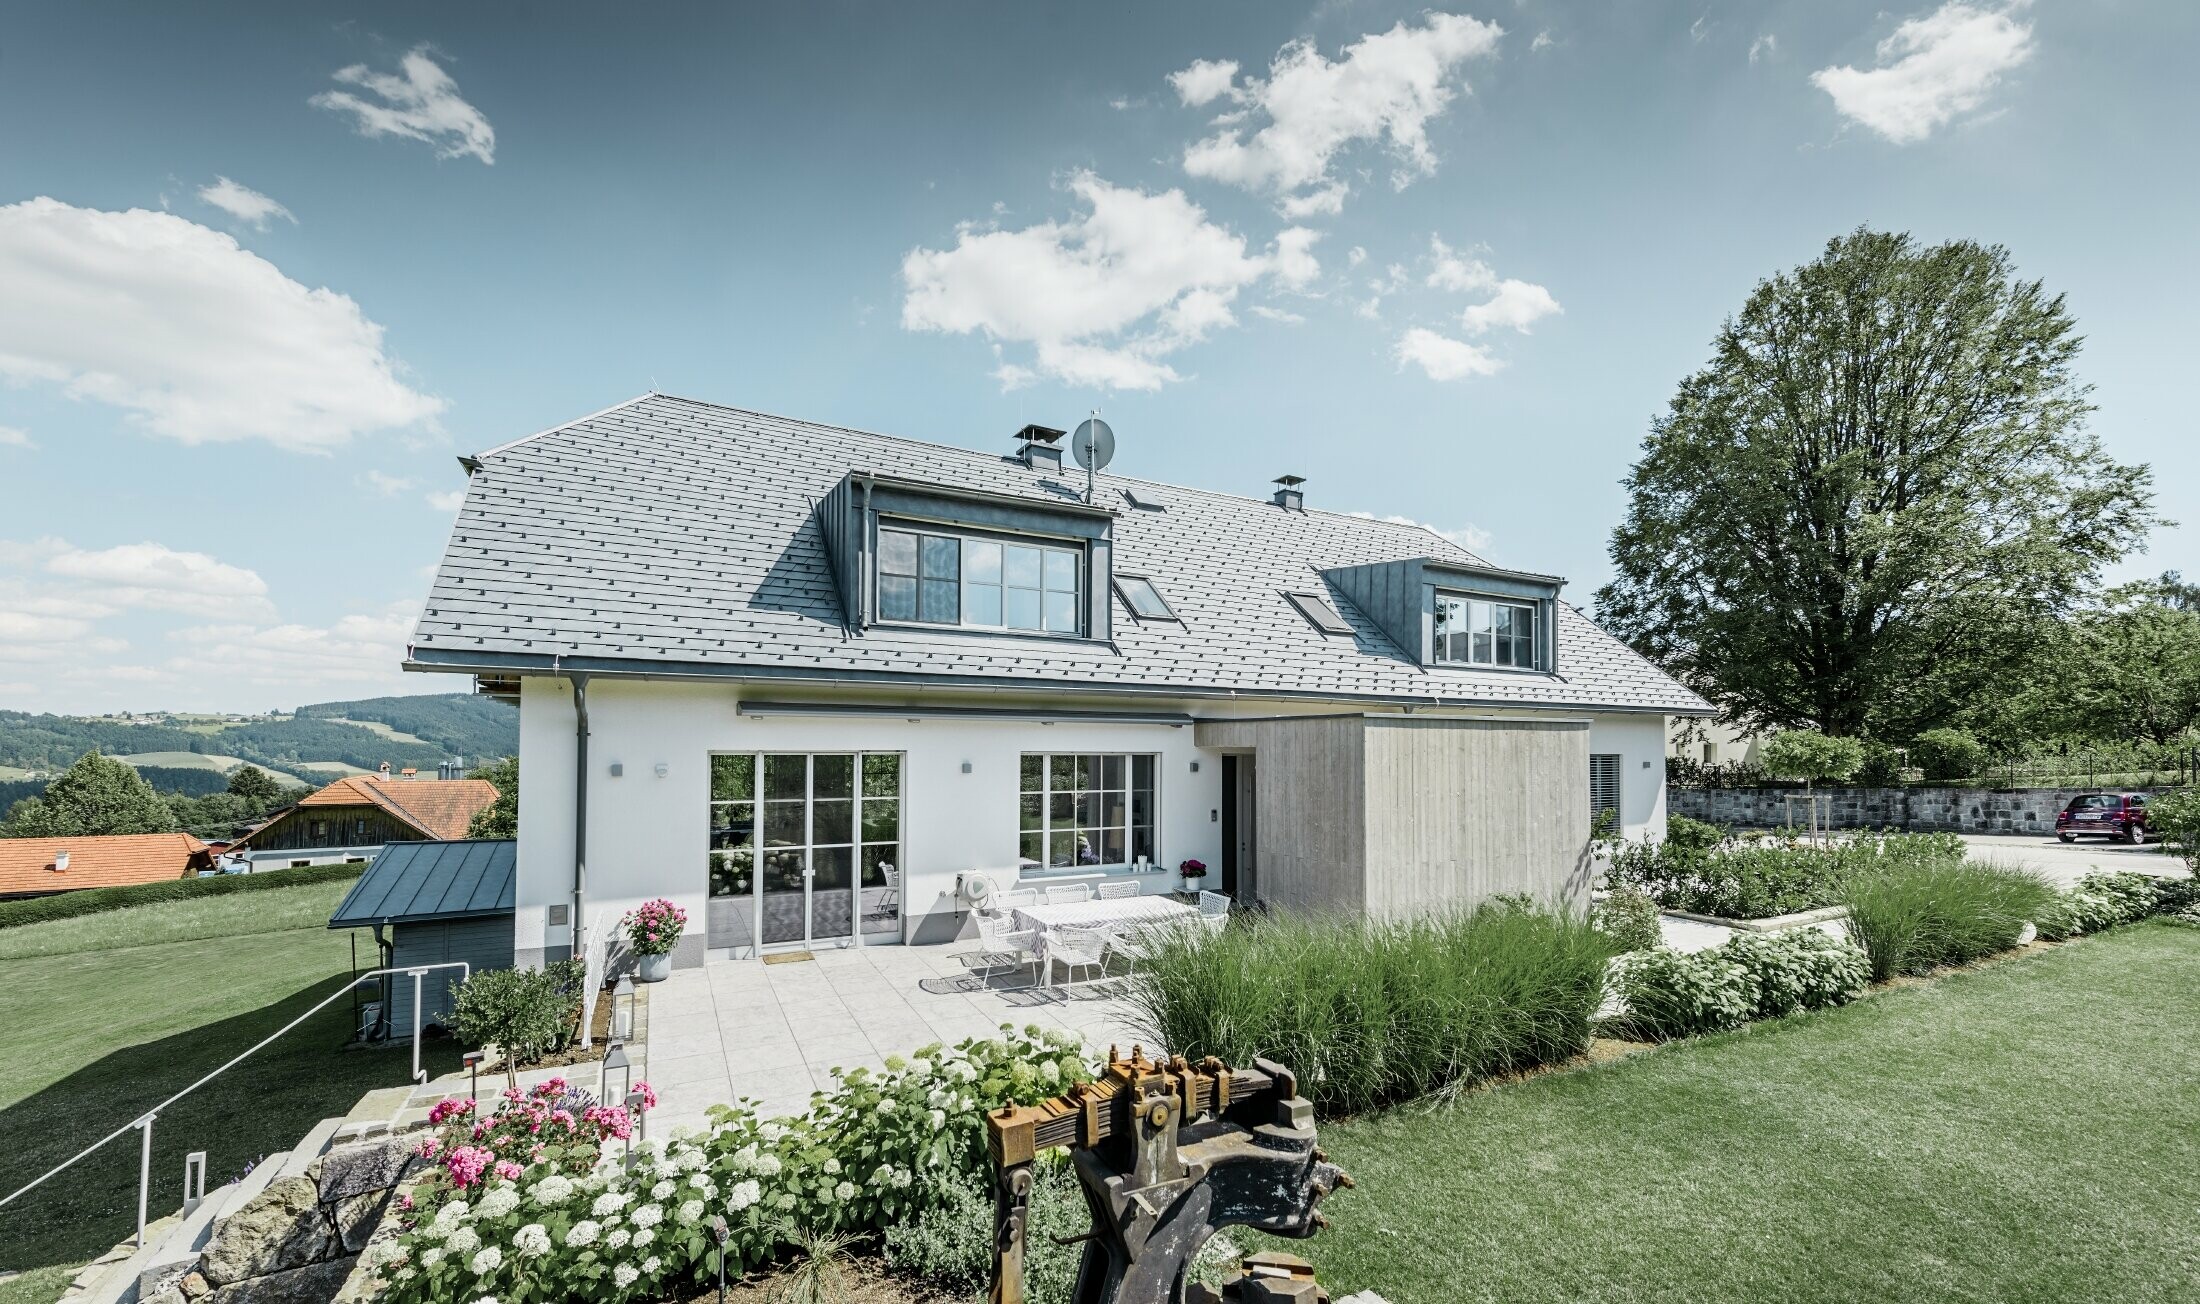 Maison individuelle classique avec toit en demi-croupe ; maison avec toit rénové à l'aide de bardeaux PREFA couleur gris pierre, avec beau jardin et grande terrasse.